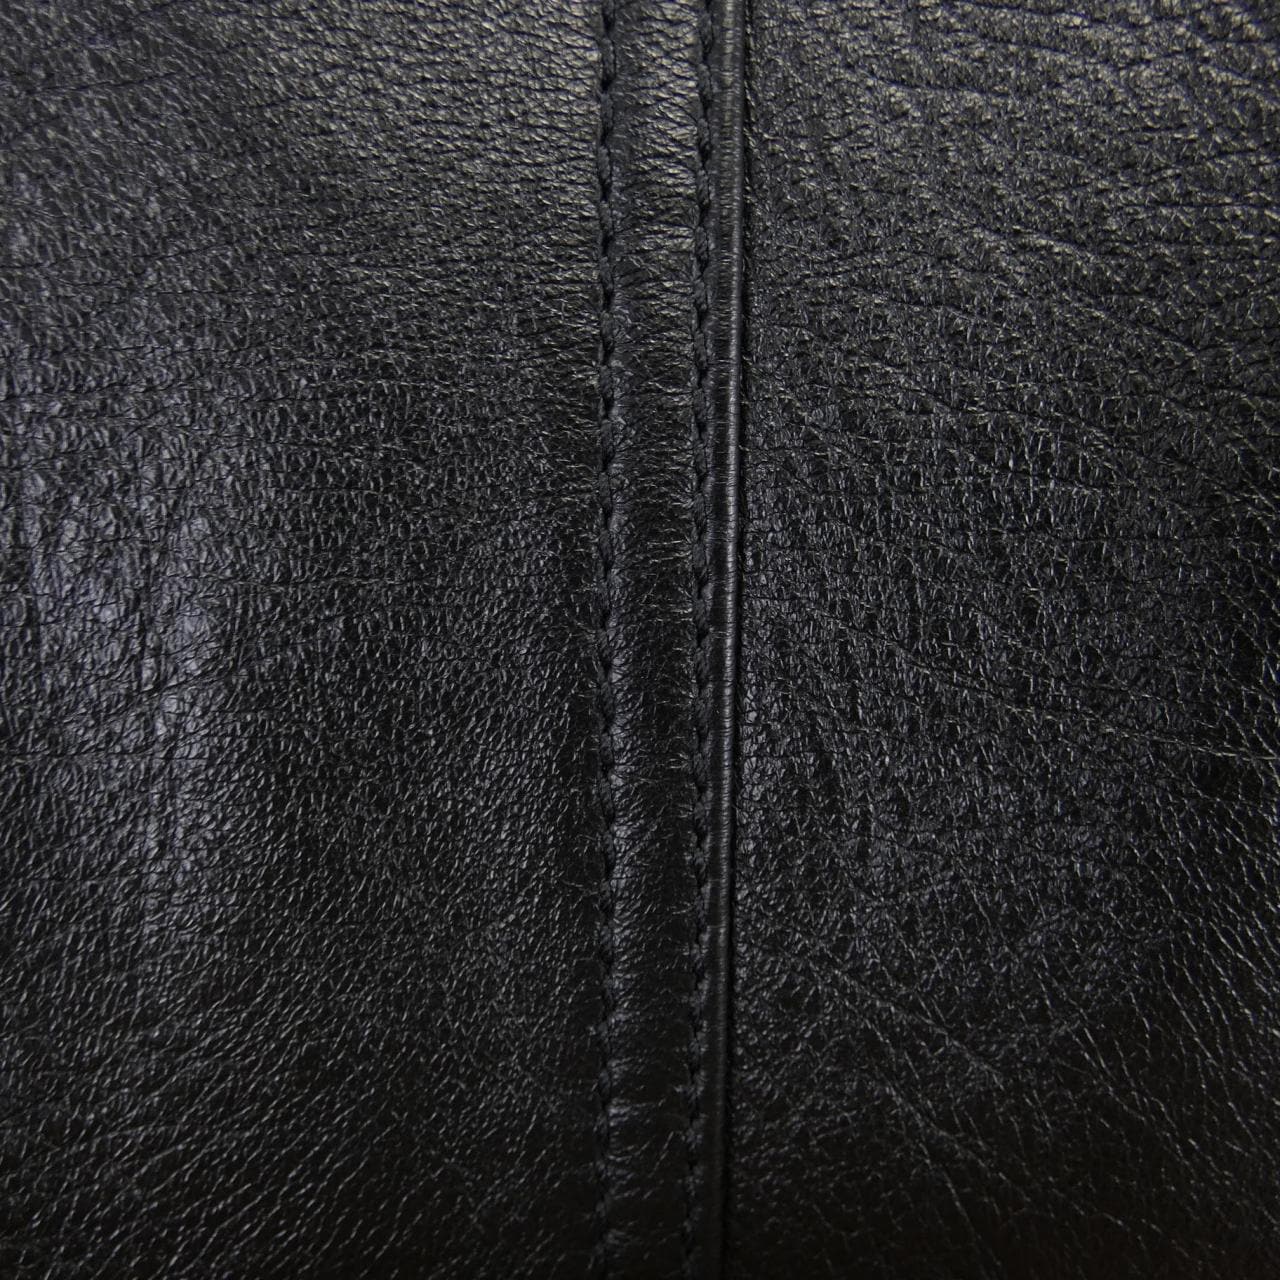 SAINT LAURENT laurent leather jacket